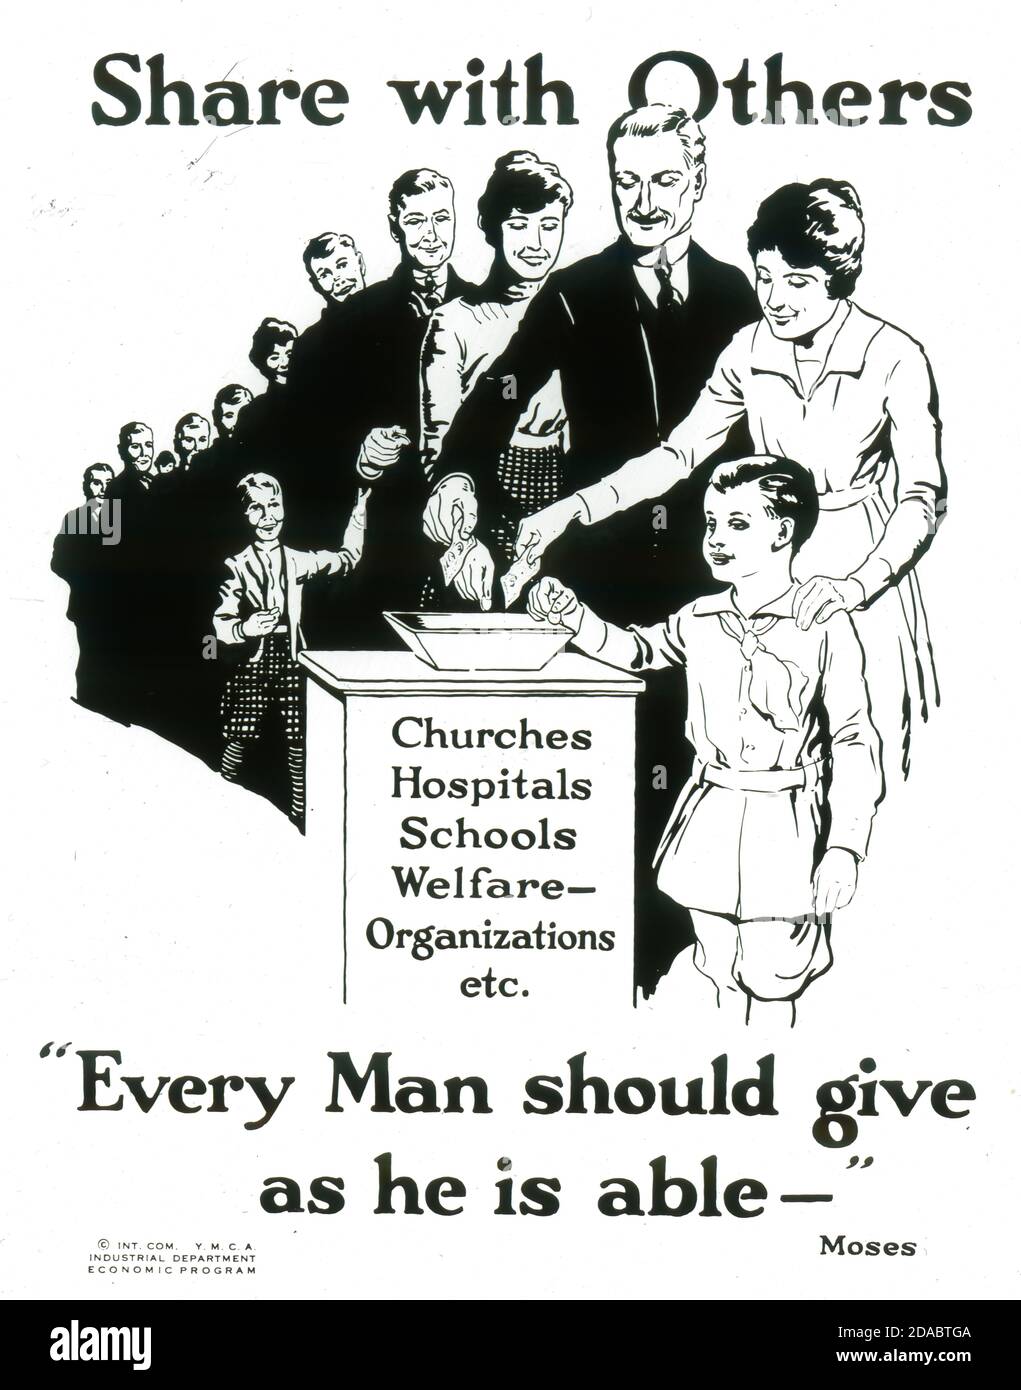 Póster de la campaña de la YMCA "Semana Nacional de la Tía" en 1920, animando a la gente a donar generosamente y compartir con otros. FUENTE: TOBOGÁN DE VIDRIO Foto de stock